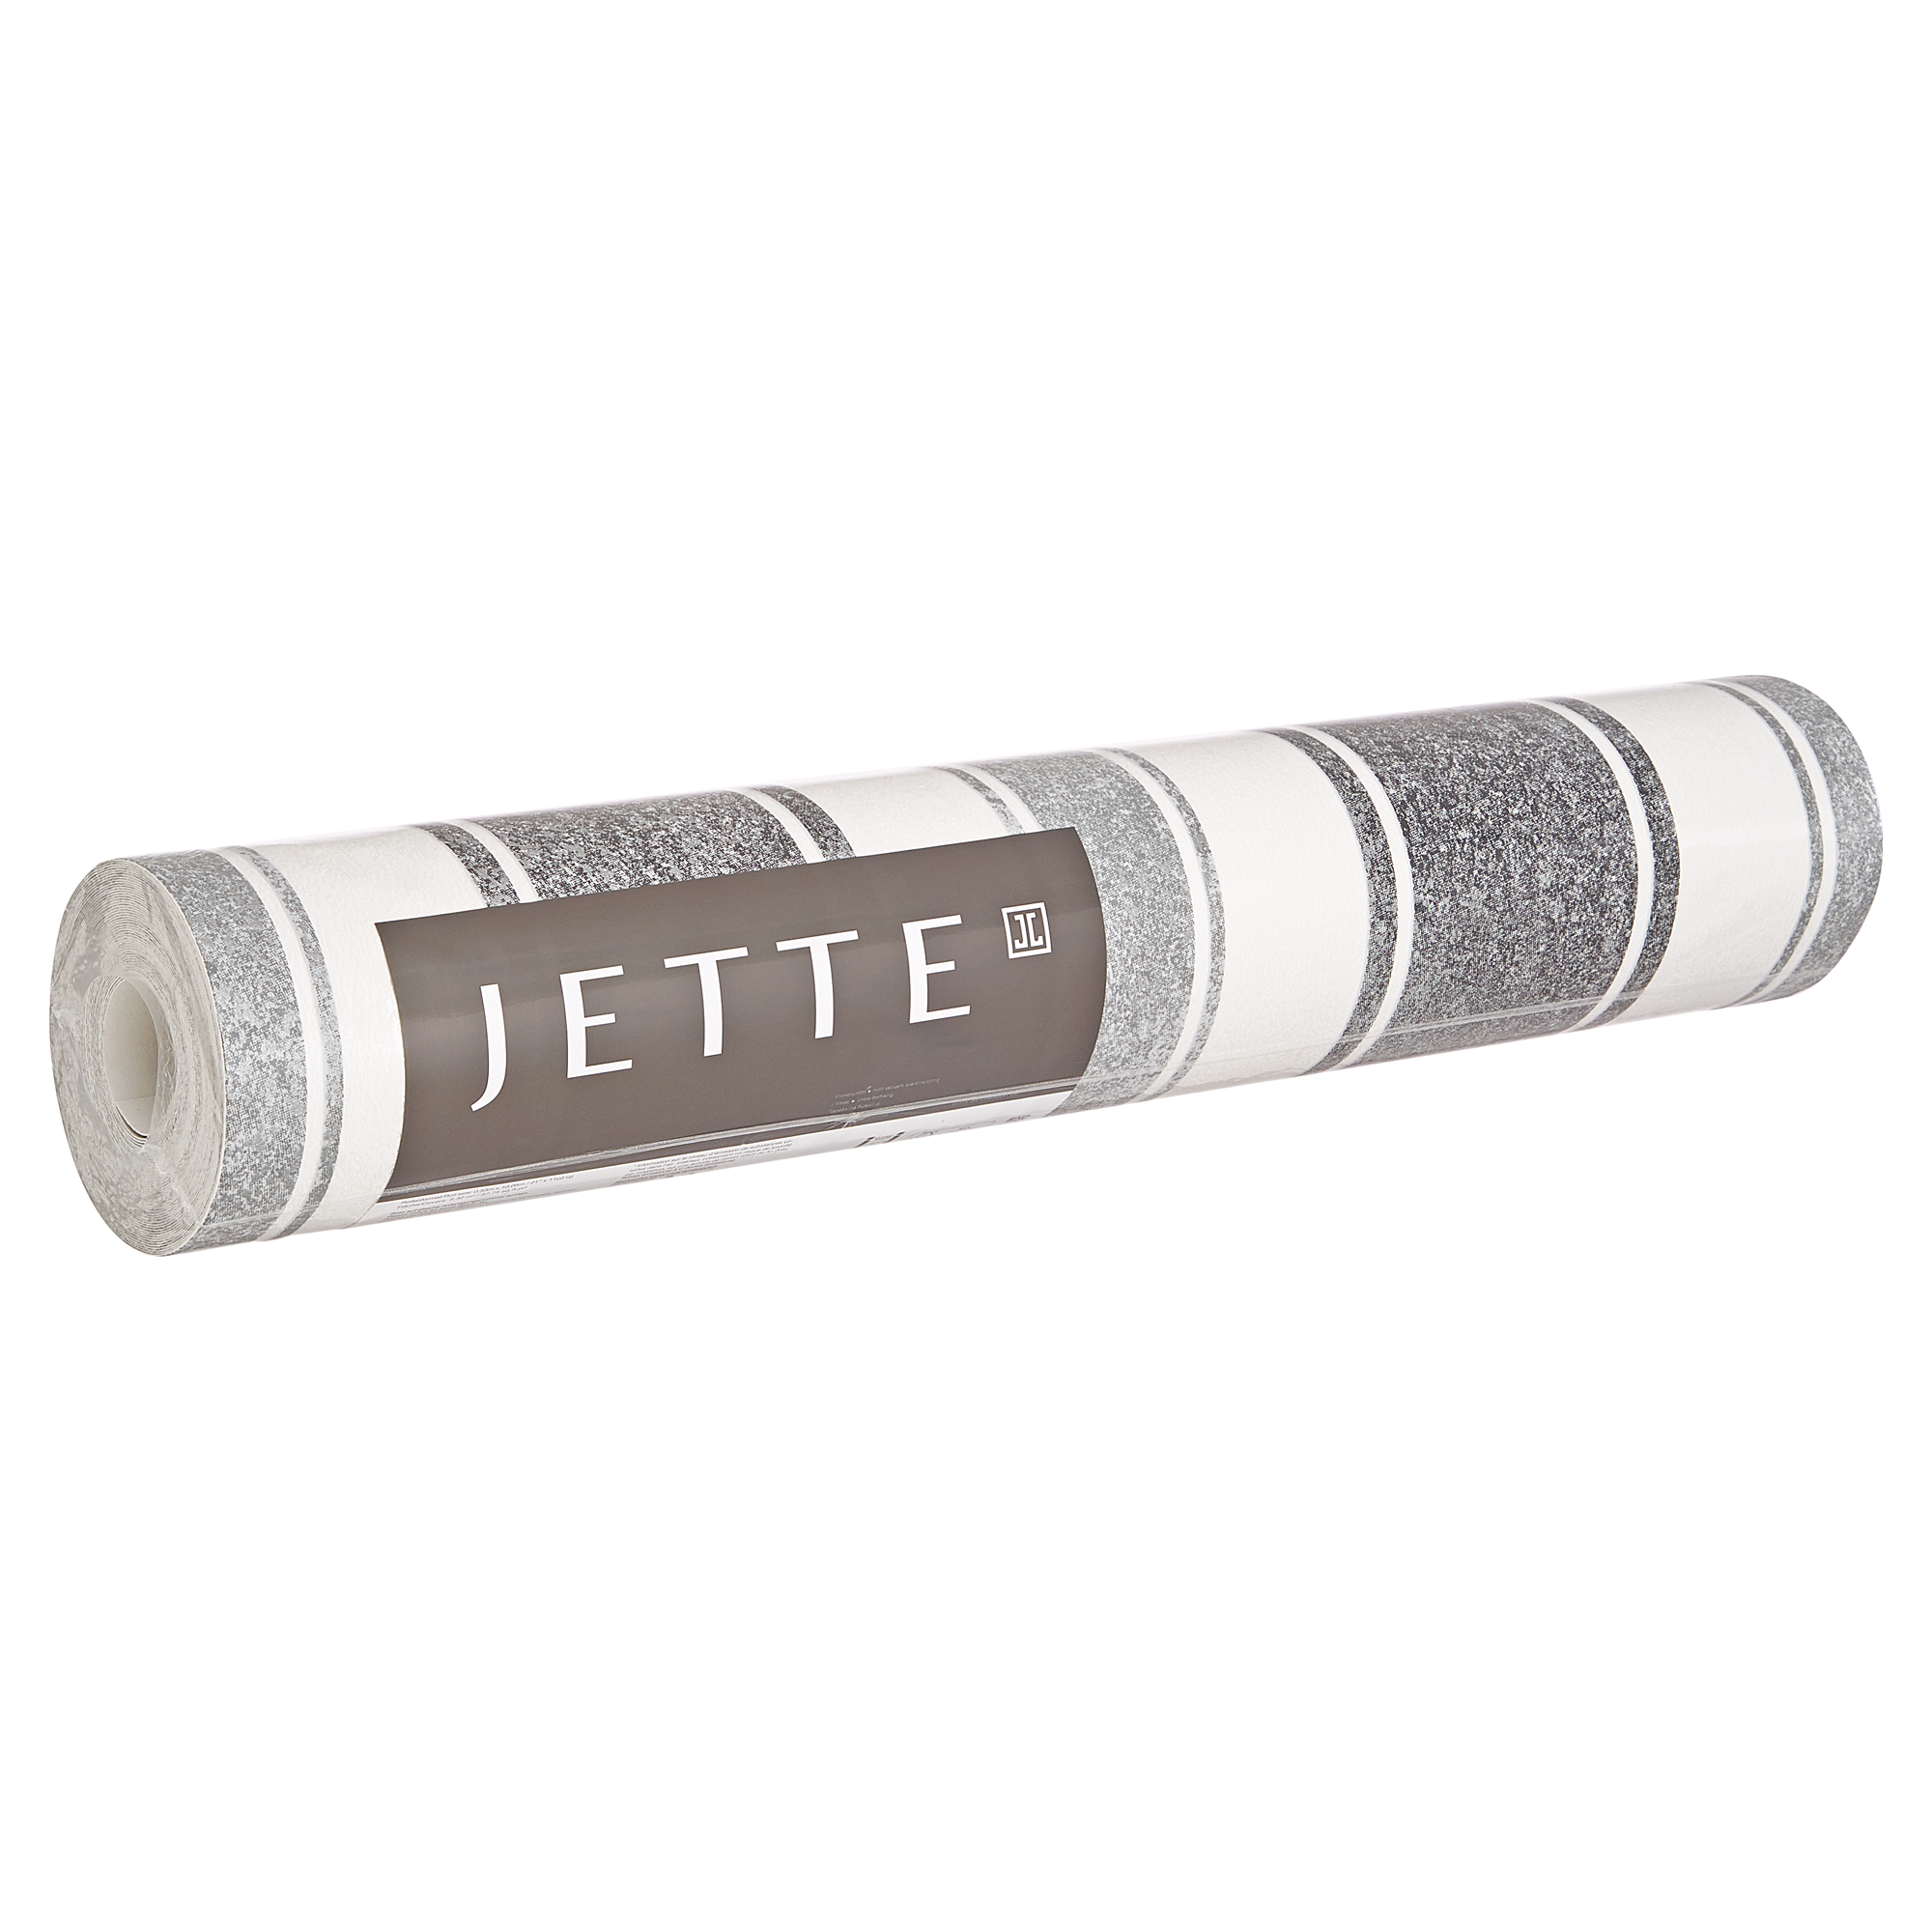 Vliestapete "Jette" Streifen weiß/schwarz 10,05 x 0,53 m + product picture